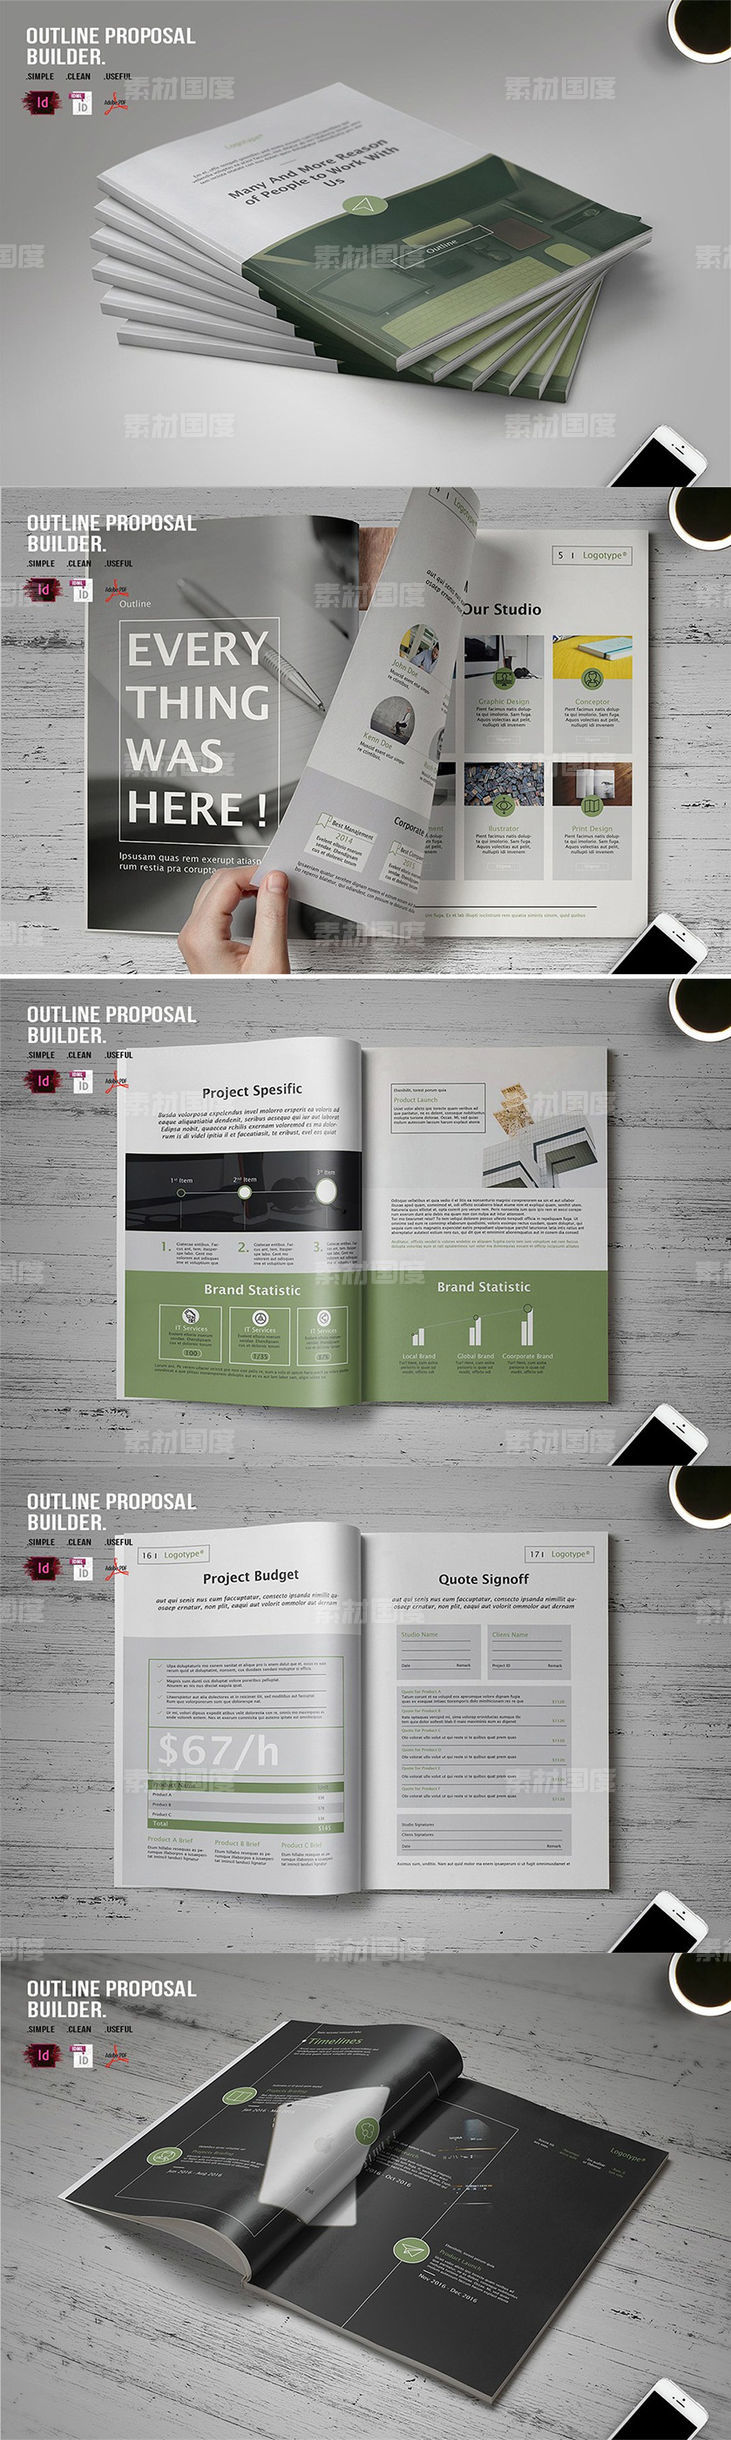 高品质的多功能商务商业画册手册楼书杂志设计模板